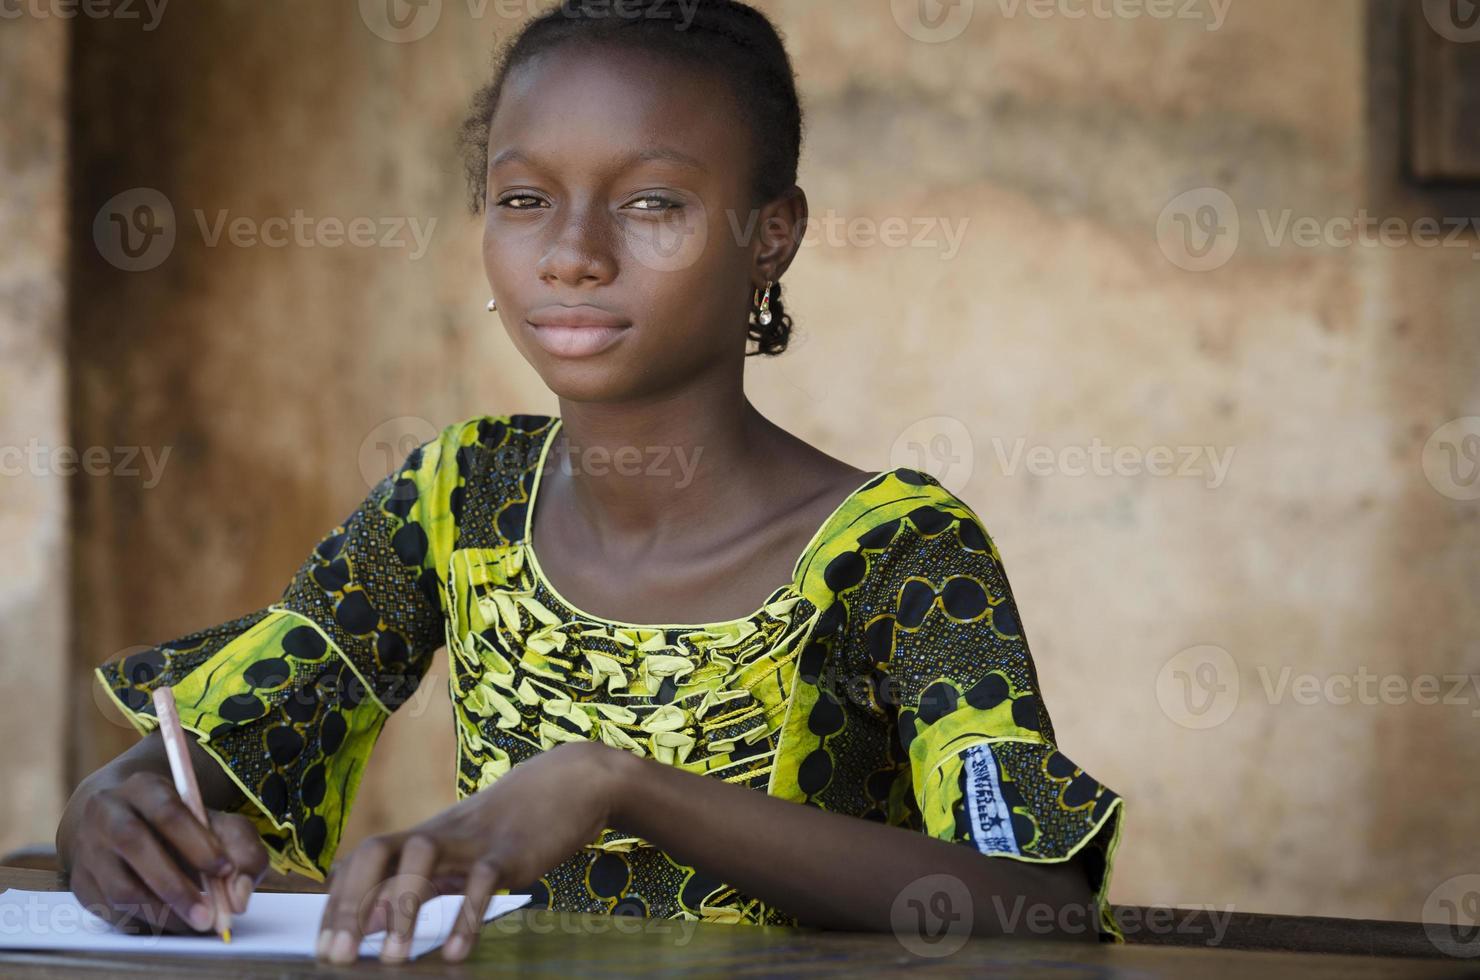 símbolo de educación - estudiante adolescente africano de regreso a la escuela foto